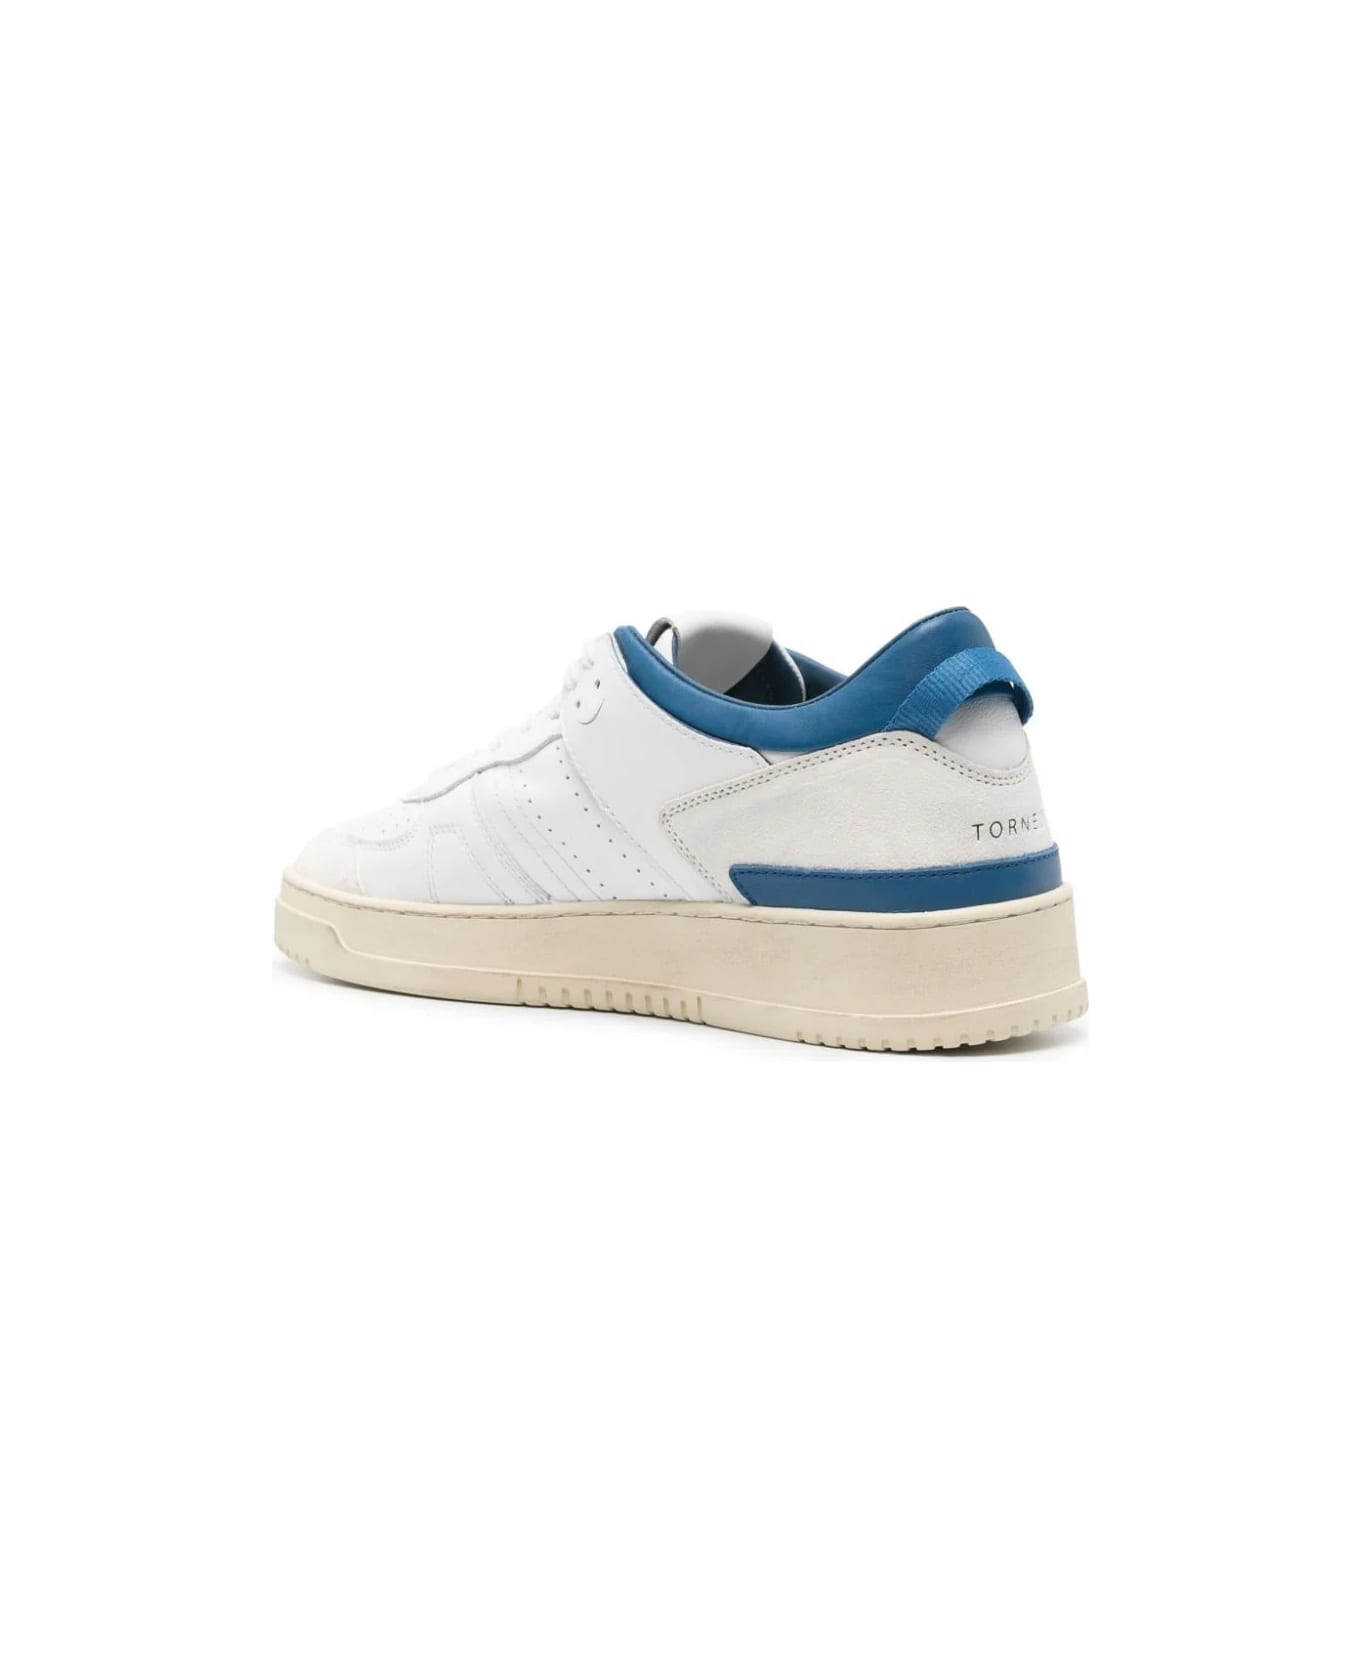 D.A.T.E. White And Bluettetorneo Sneakers - Blue